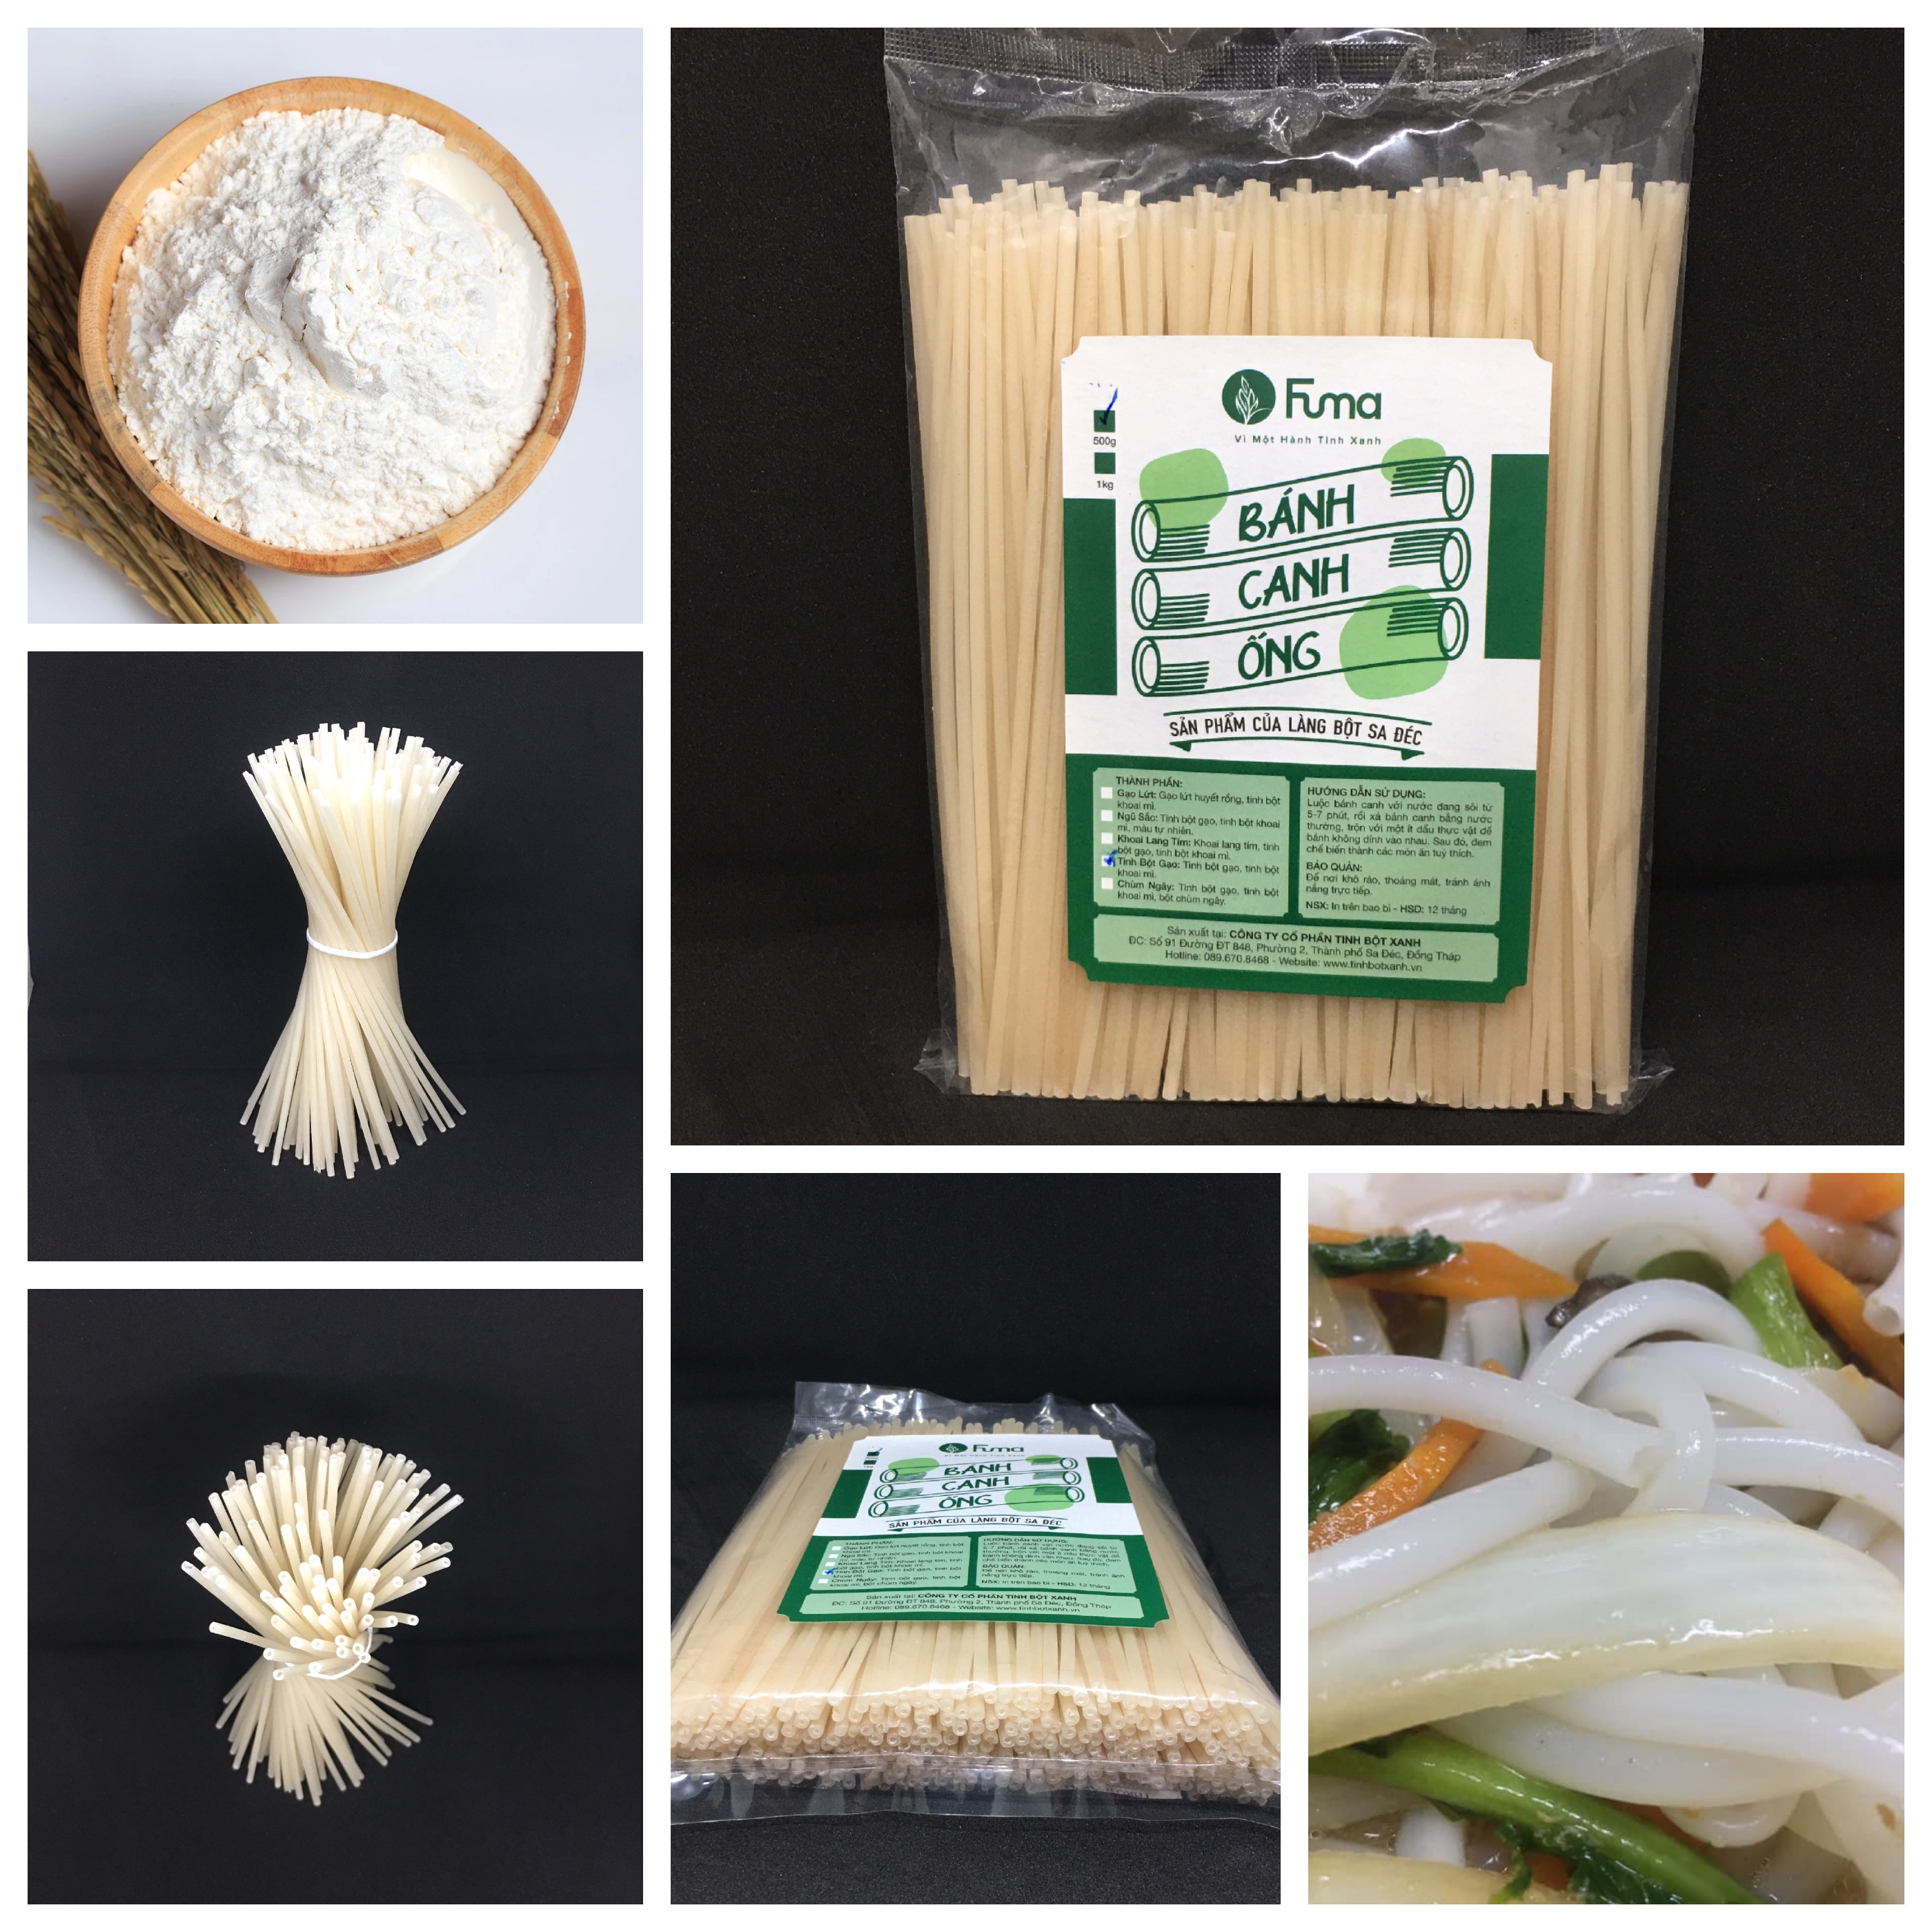 Bánh Canh Ống (tinh bột gạo) Fuma - Sản phẩm thuần tự nhiên từ tinh bột gạo trắng